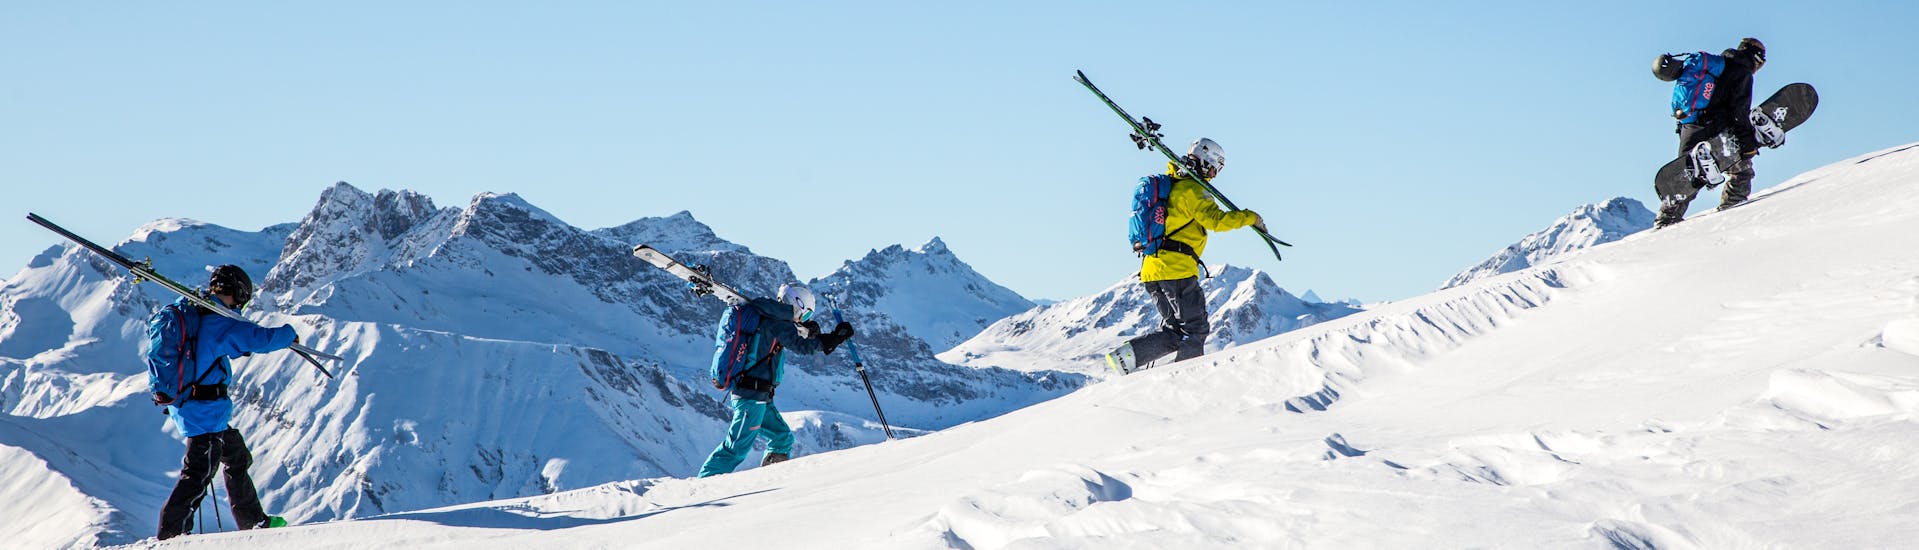 Cours de ski freeride pour Freeriders expérimentés.